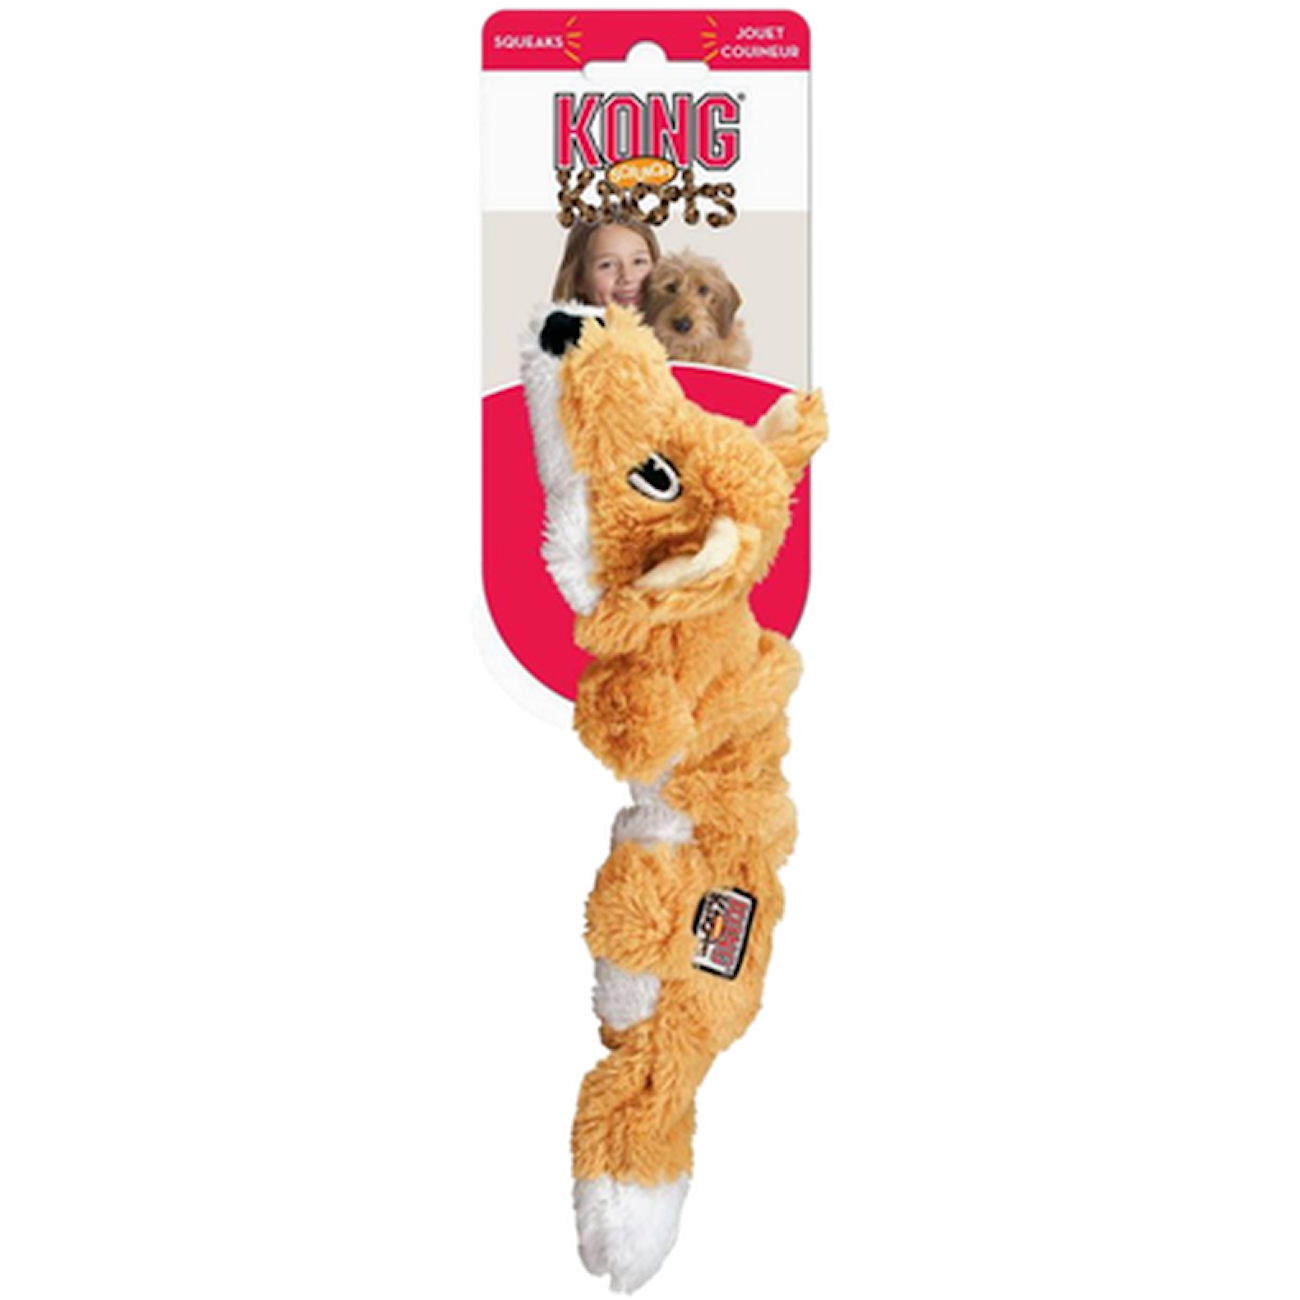 Scrunch Knots Fox Dog Toy